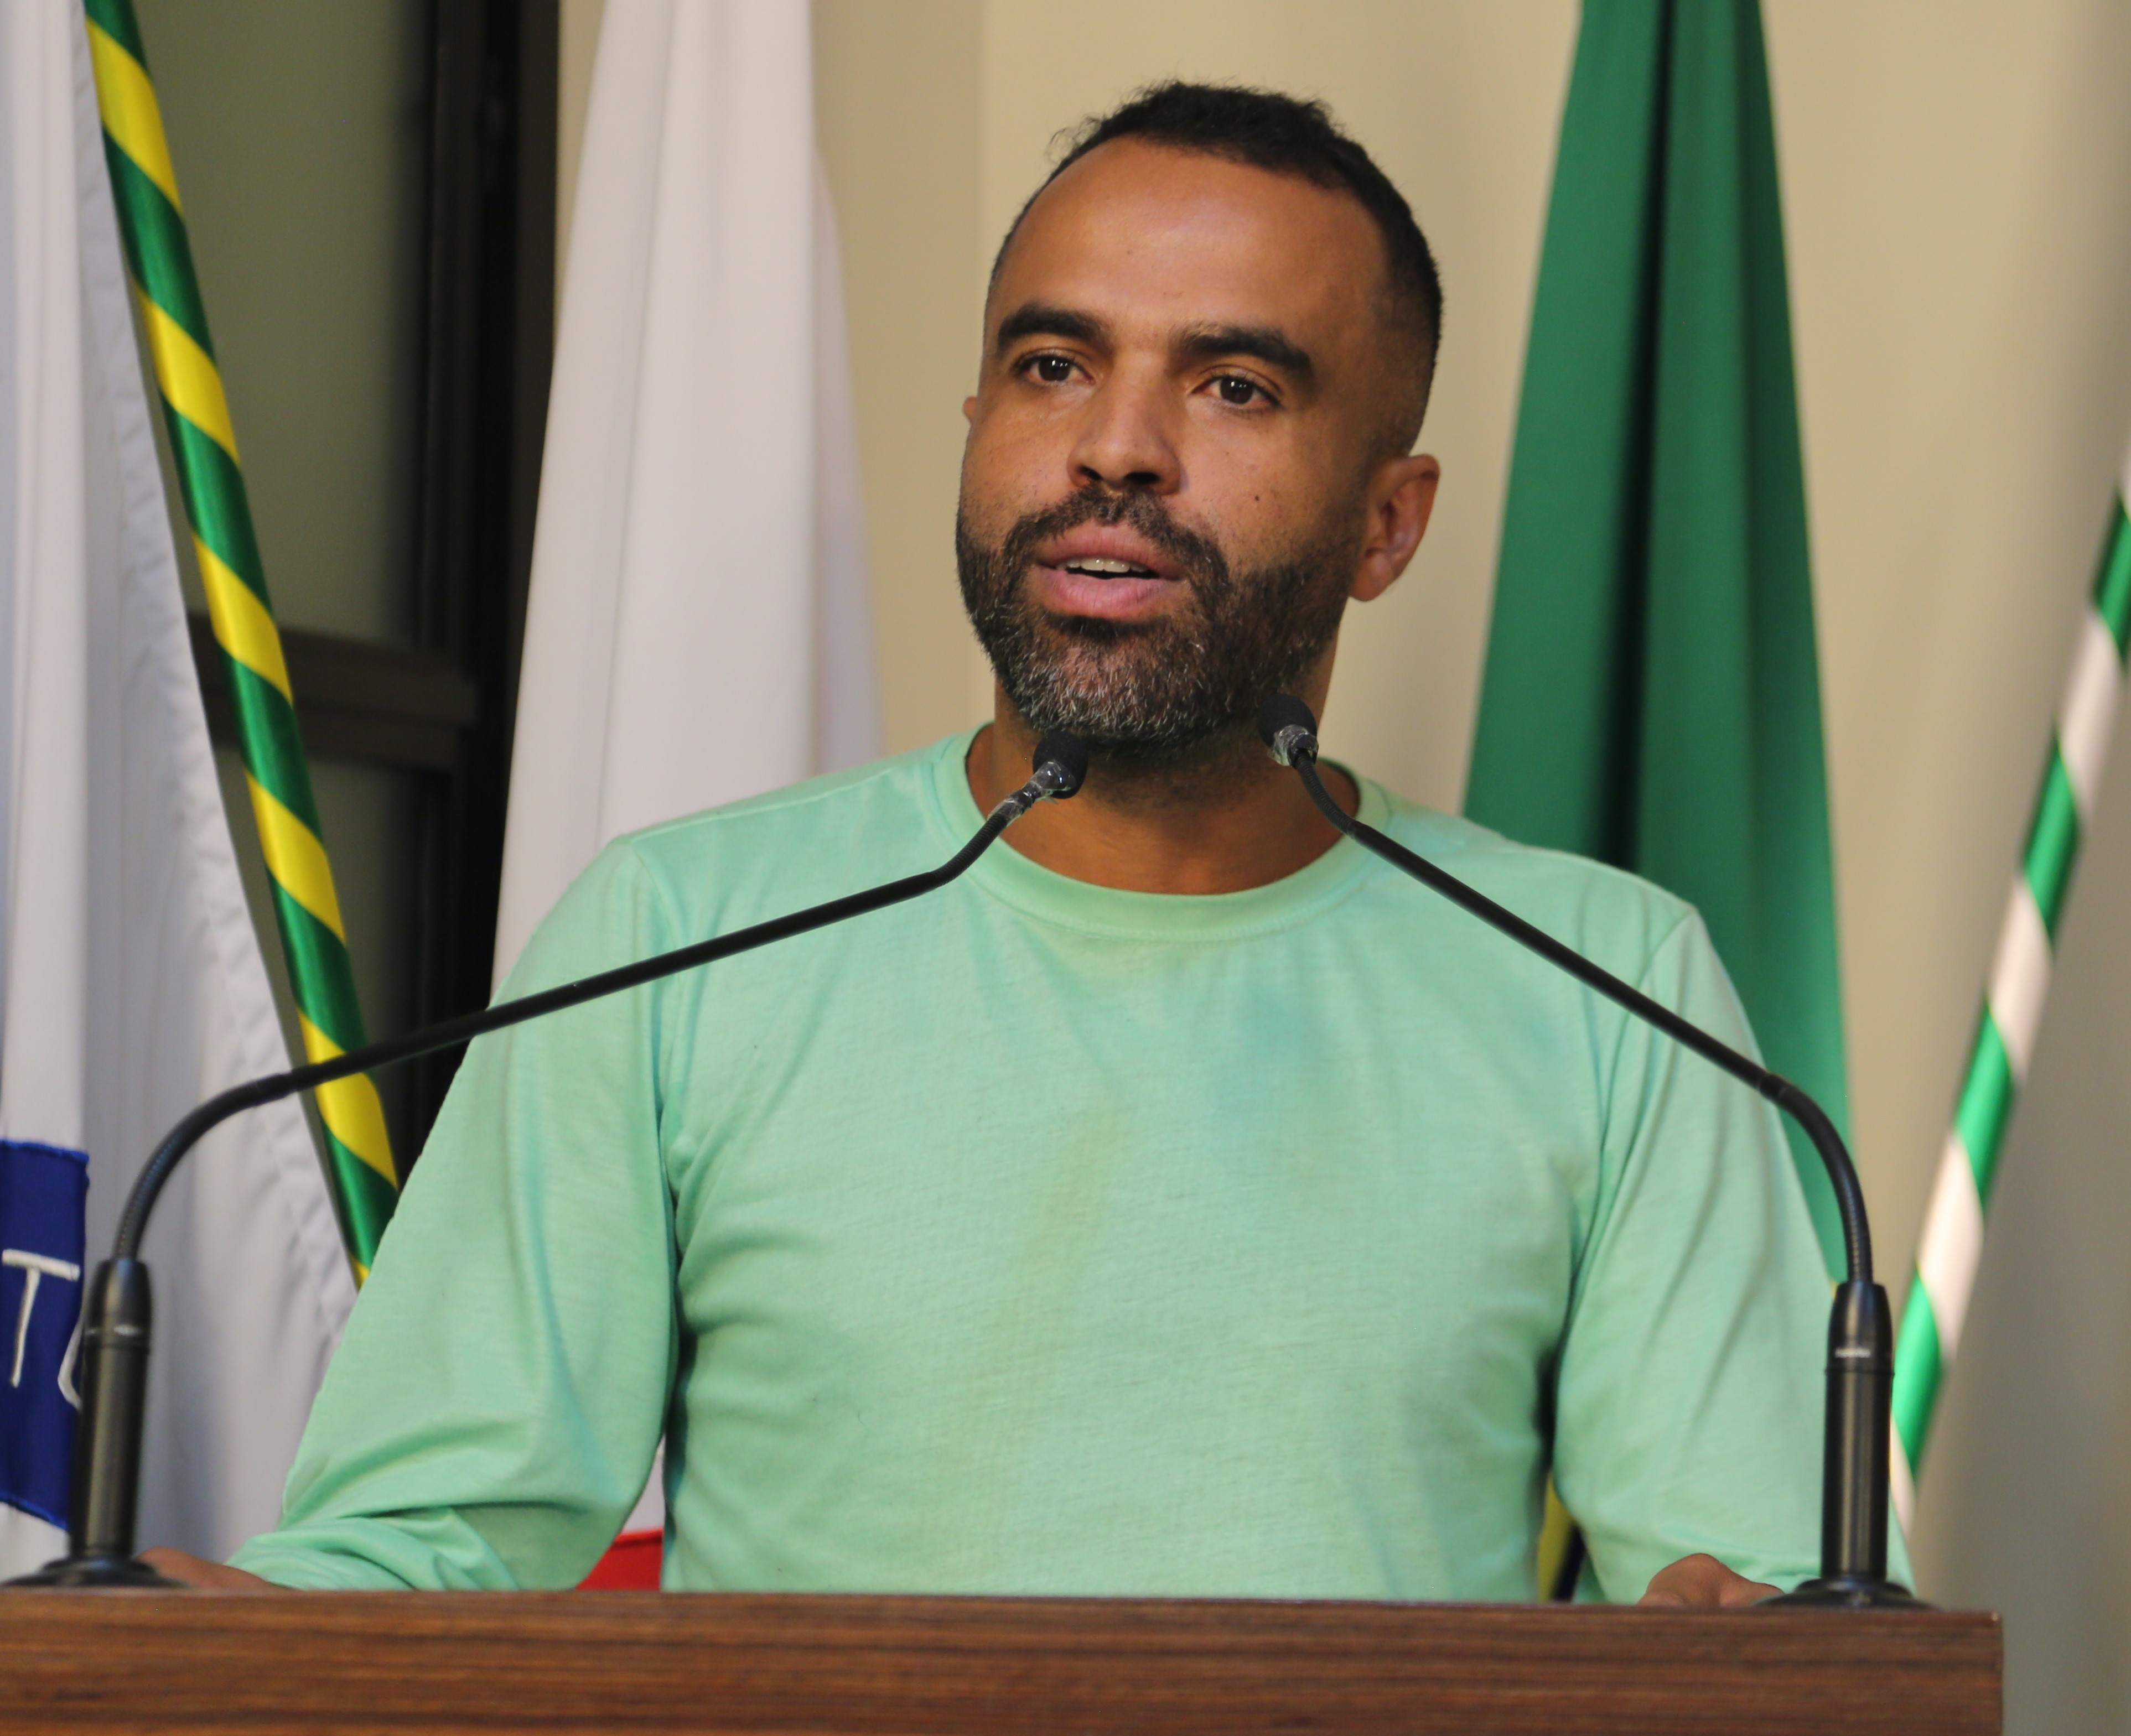 Vereador Rogério Fontes (Tistu) (sem partido)